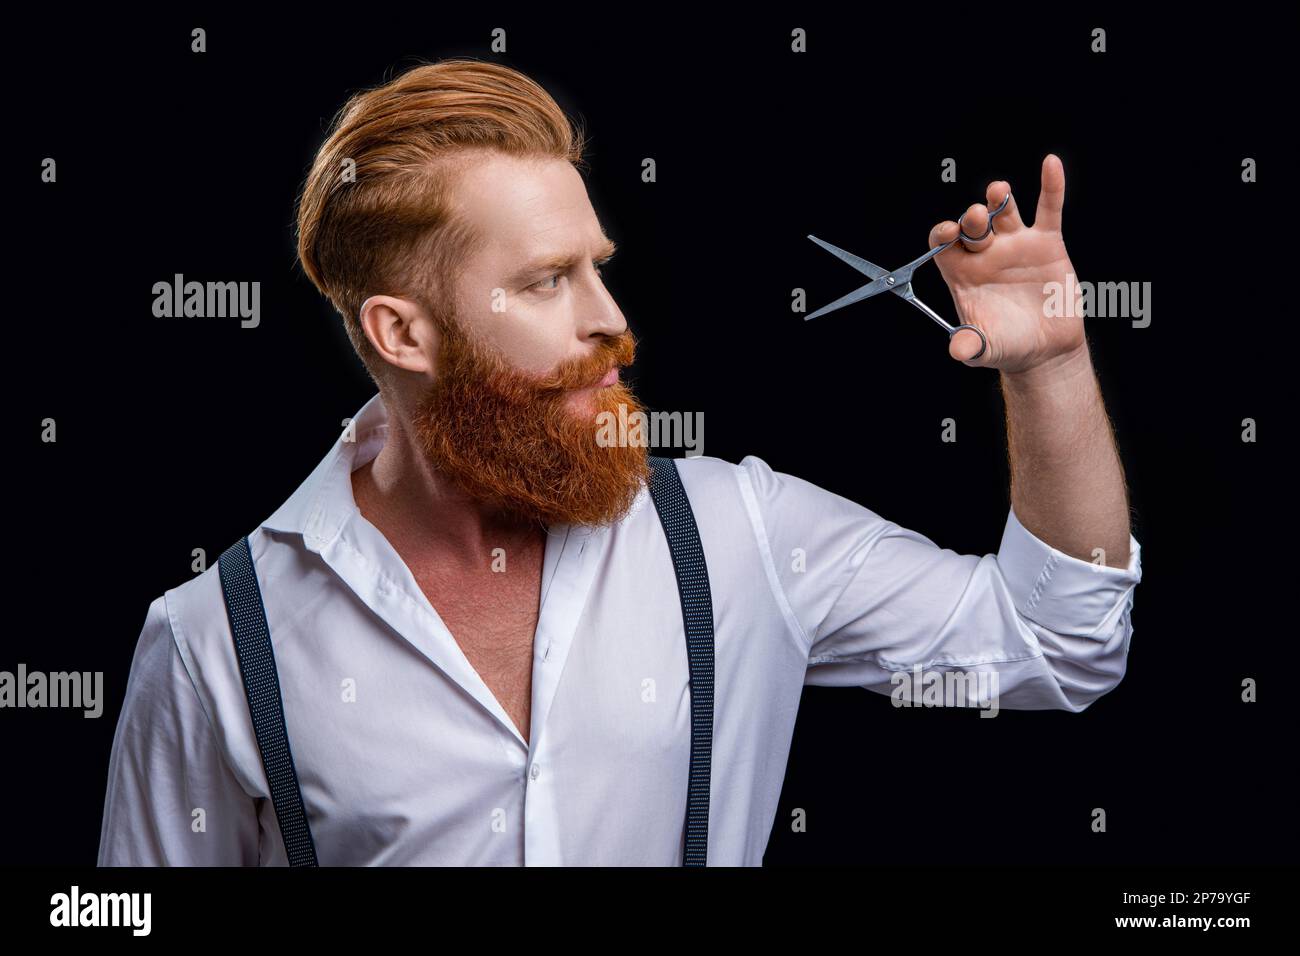 Barbero hombre barbudo con tijeras: fotografía de stock